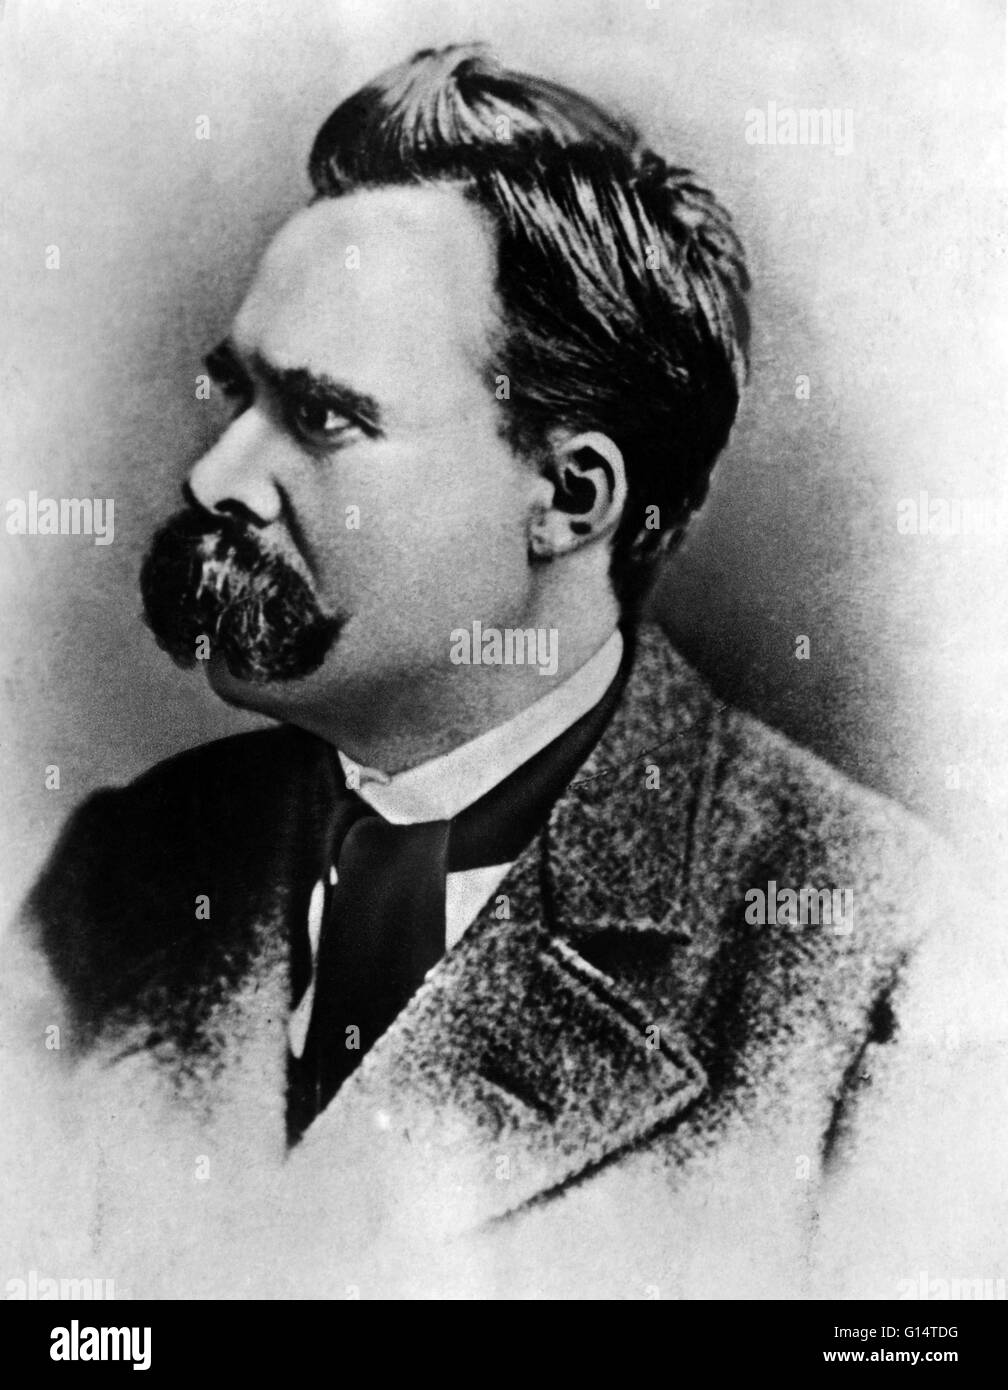 Friedrich Wilhelm Nietzsche (Ottobre 15, 1844 - 25 agosto 1900) era un filosofo tedesco, poeta e compositore classico filologo. Egli ha scritto testi critici sulla religione, morale, la cultura contemporanea, filosofia e scienza. Nietzsche di influenza su modalità Foto Stock